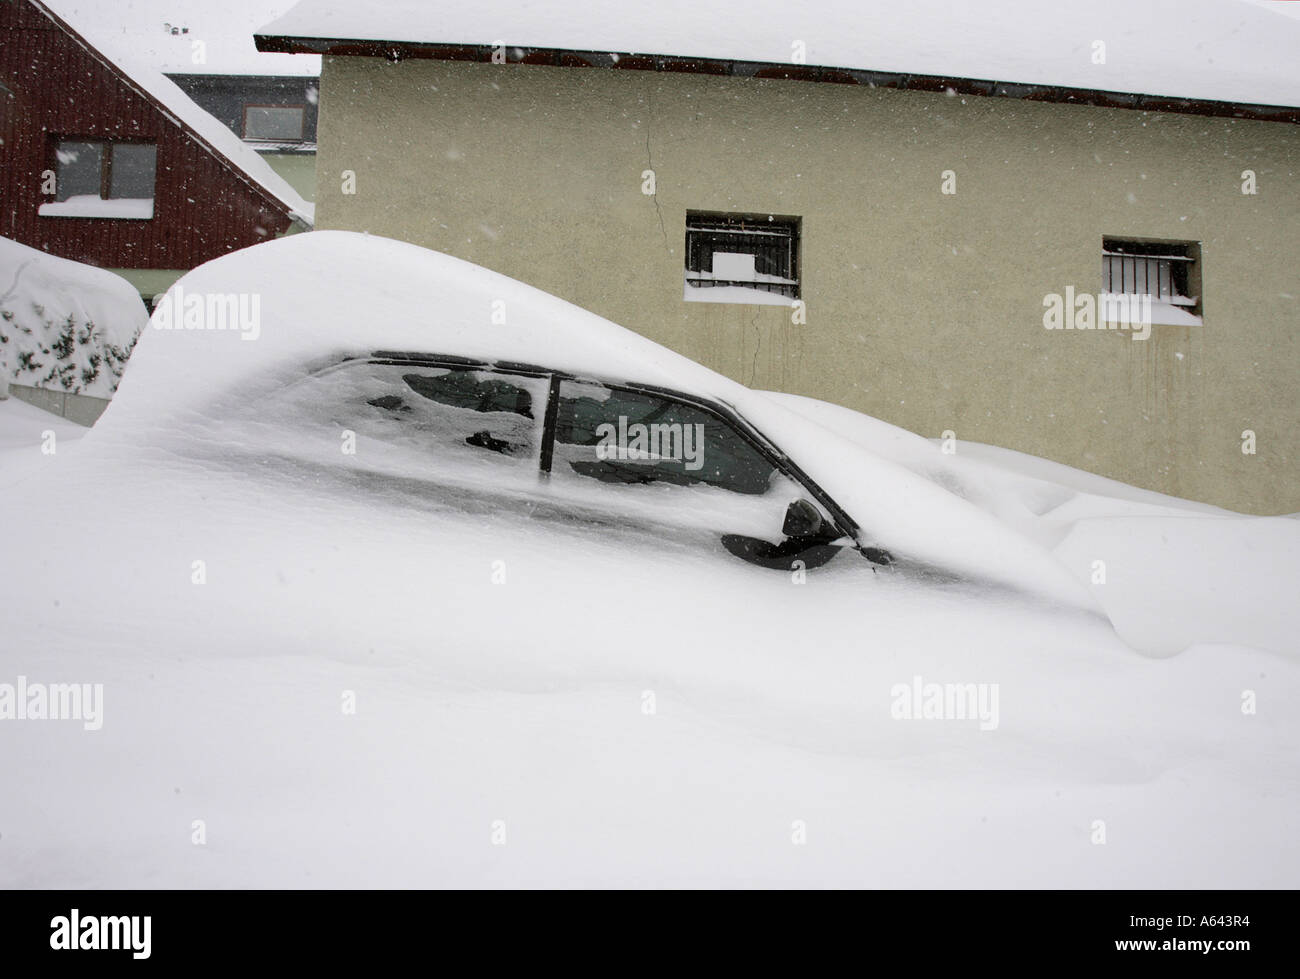 Par la neige voiture à Oberwiesenthal, Erzgebirge, Erz Monts Métallifères, Saxe, Allemagne Banque D'Images